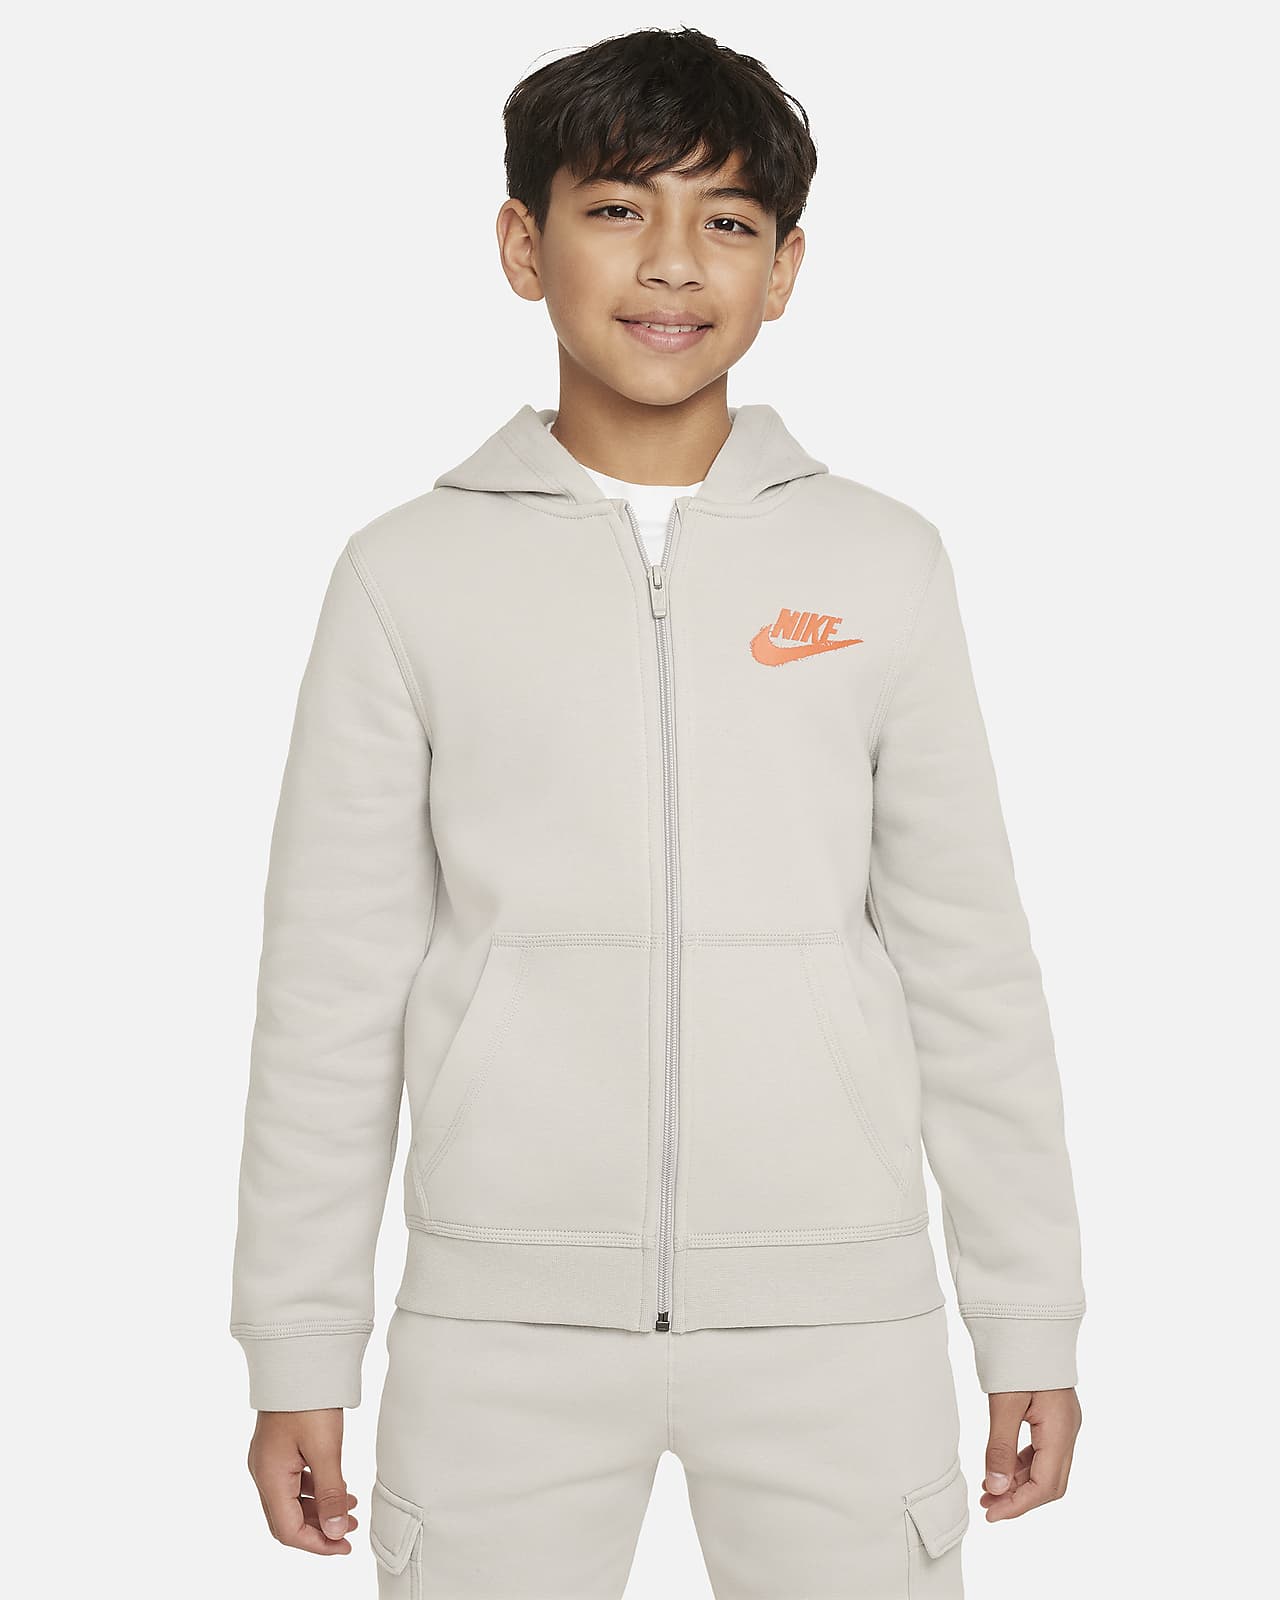 Nike Sportswear Hoodie Reißverschluss und mit für Kinder Nike CH Grafikdetail (Jungen). durchgehendem ältere